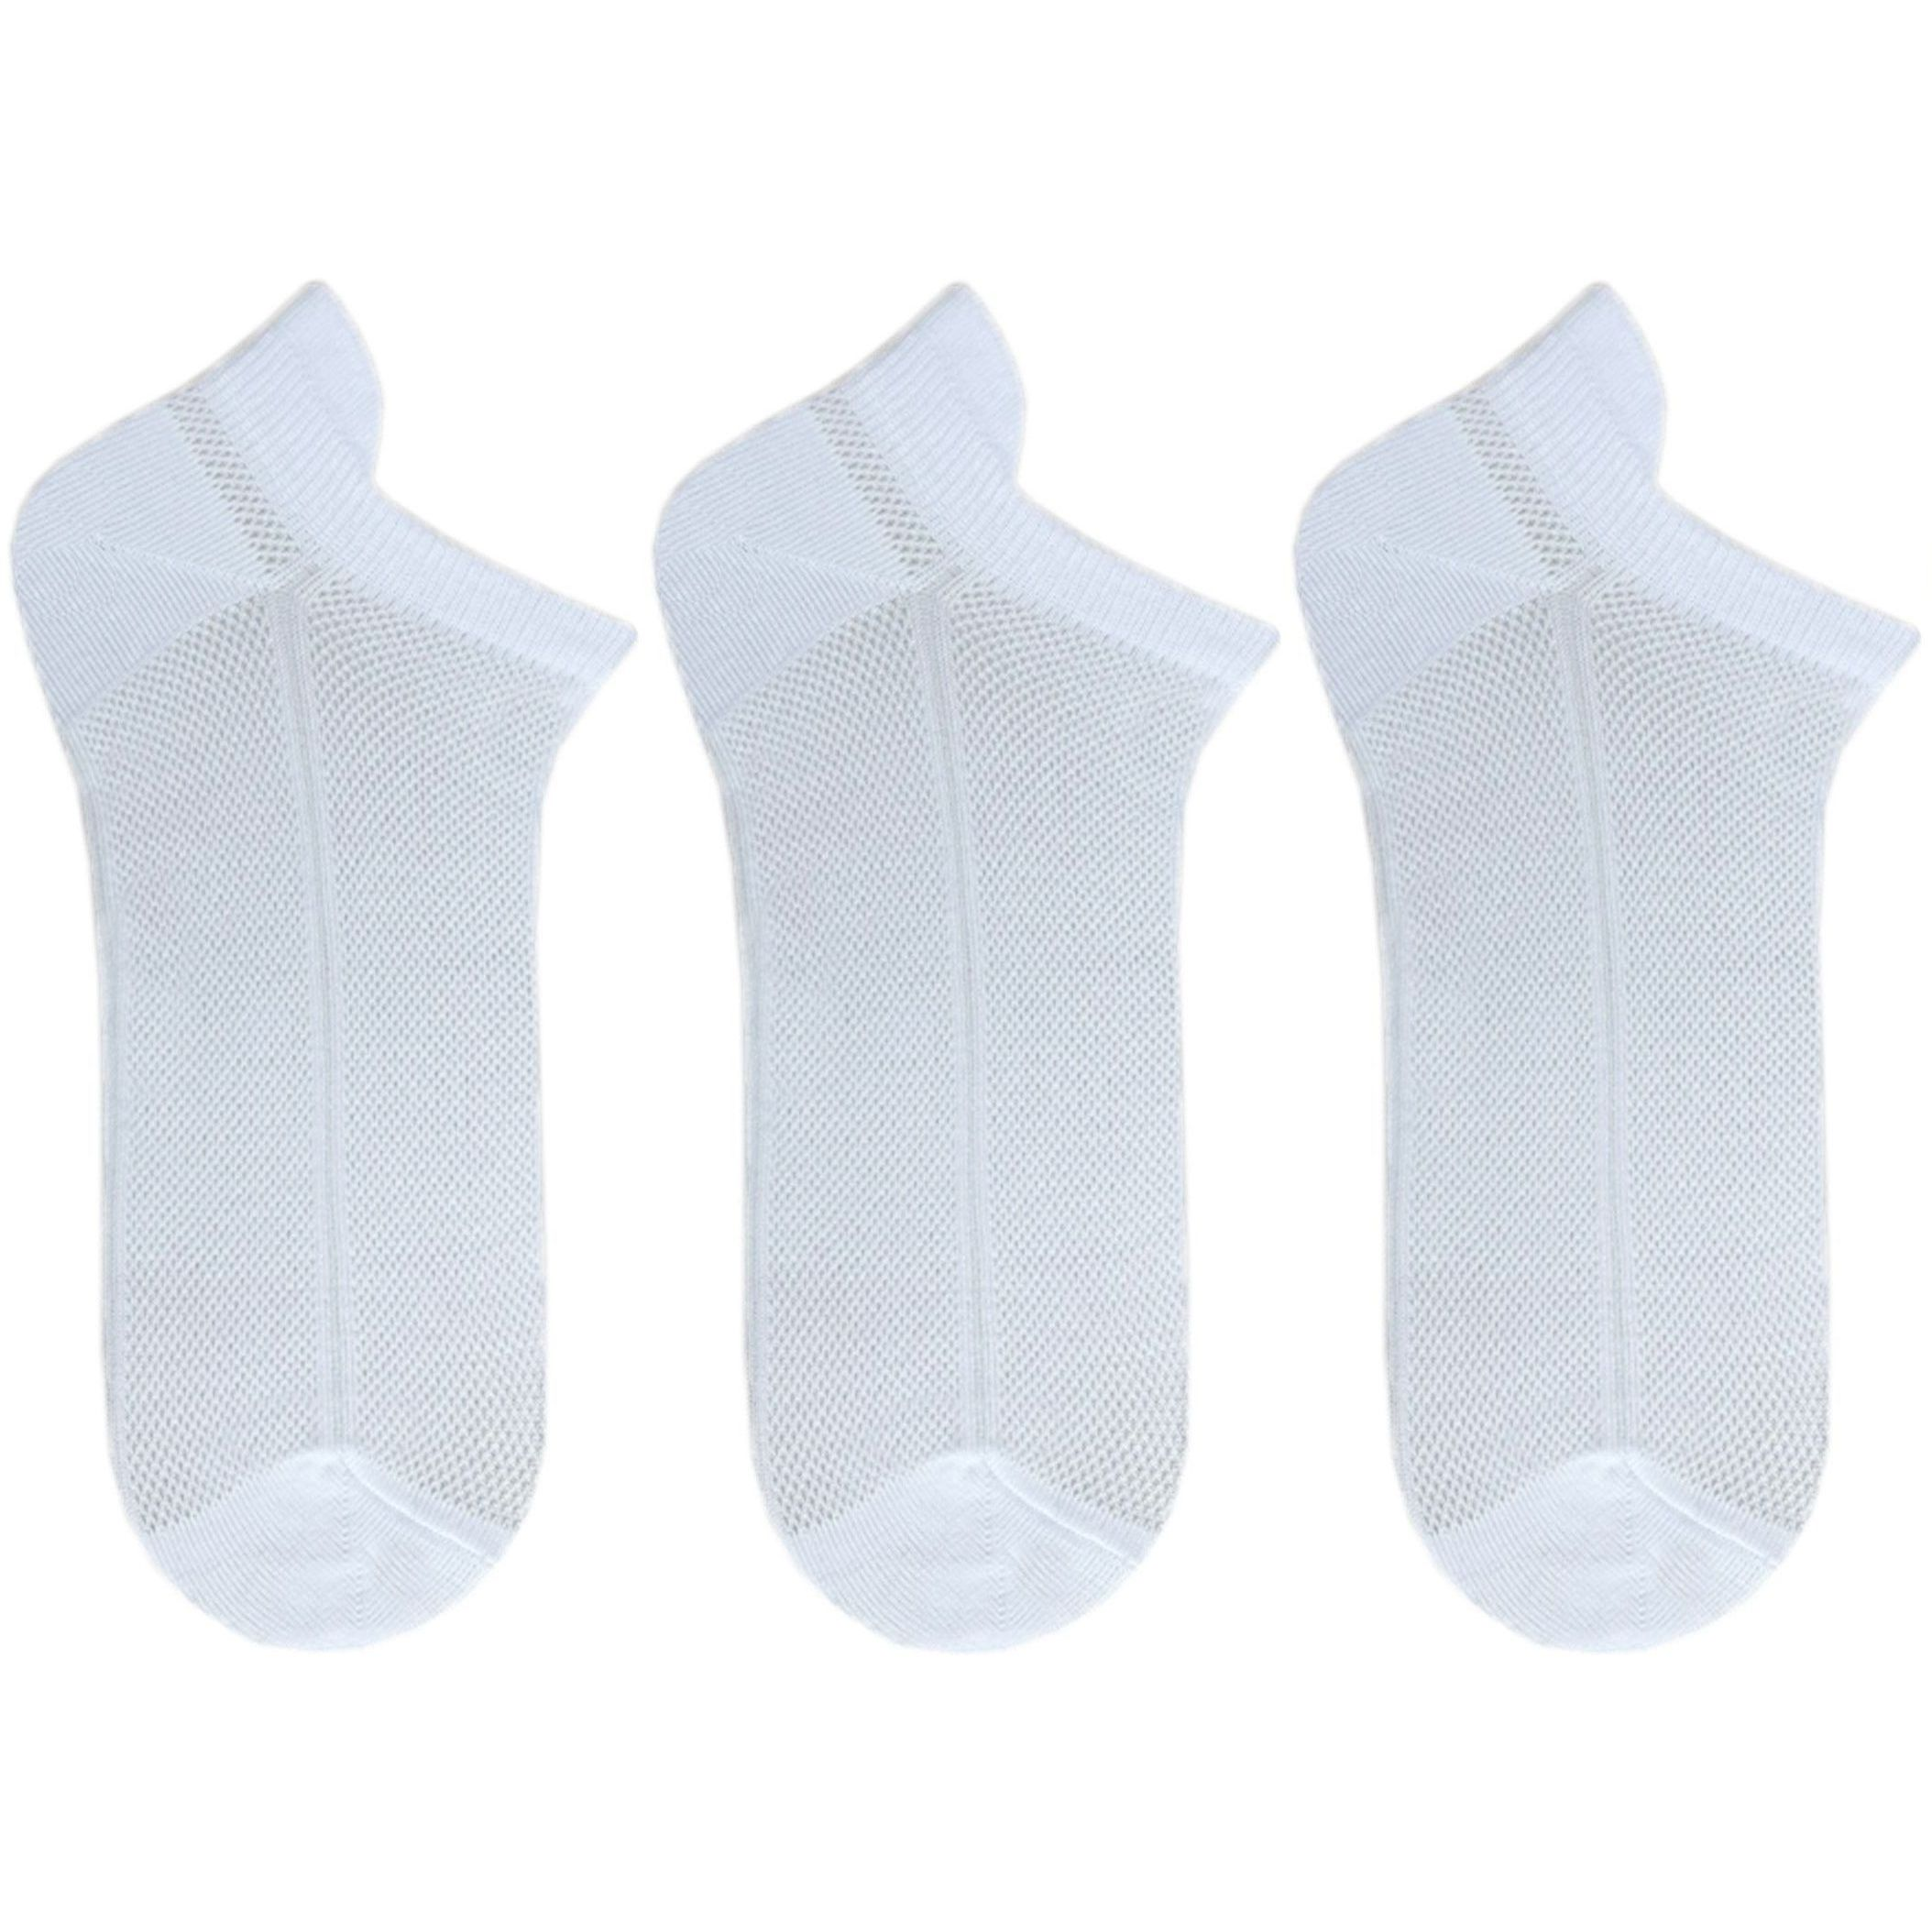 Набор носков женских Premier Socks 36-40 3 пары белые (4820163319247) фото 1